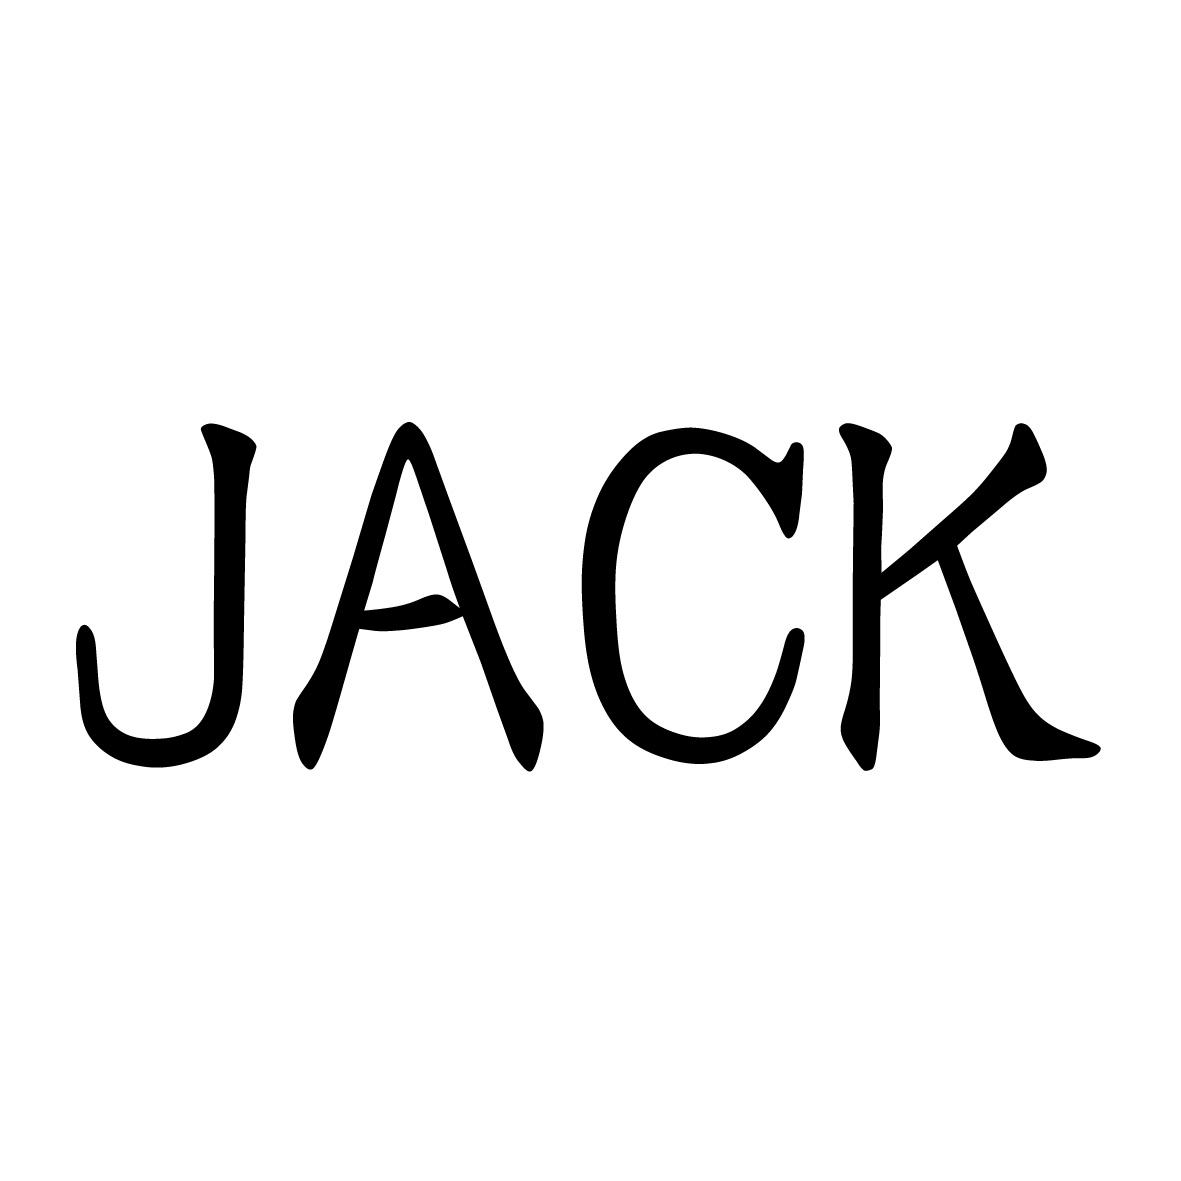 商标文字jack商标注册号 20180267,商标申请人漳州市陈字贸易有限公司